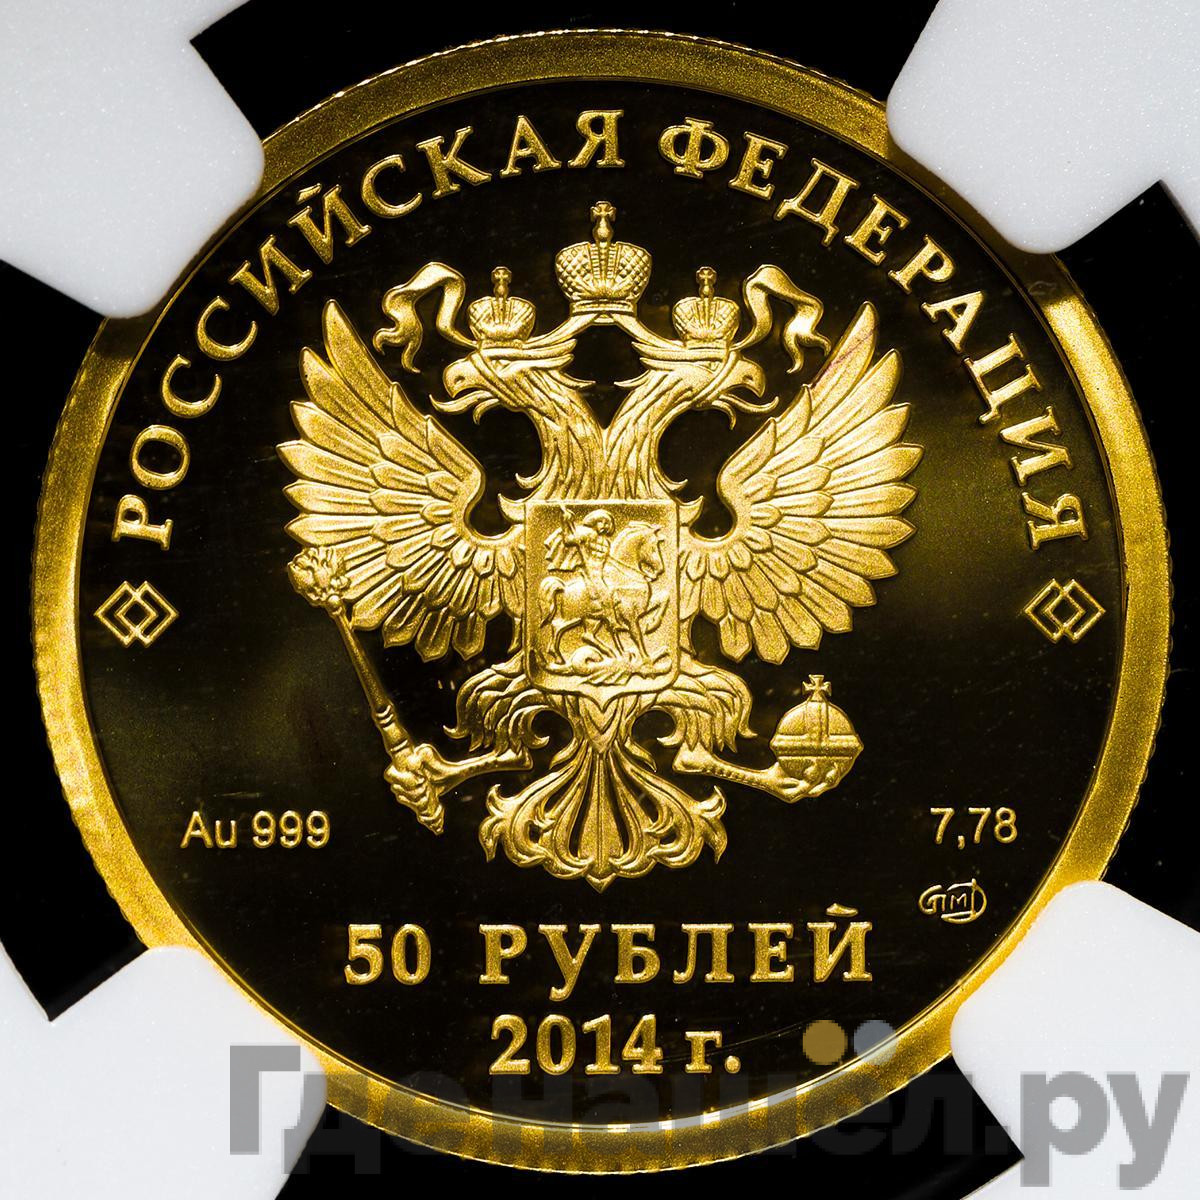 50 рублей 2014 года СПМД Олимпиада в Сочи - фигурное катание на коньках